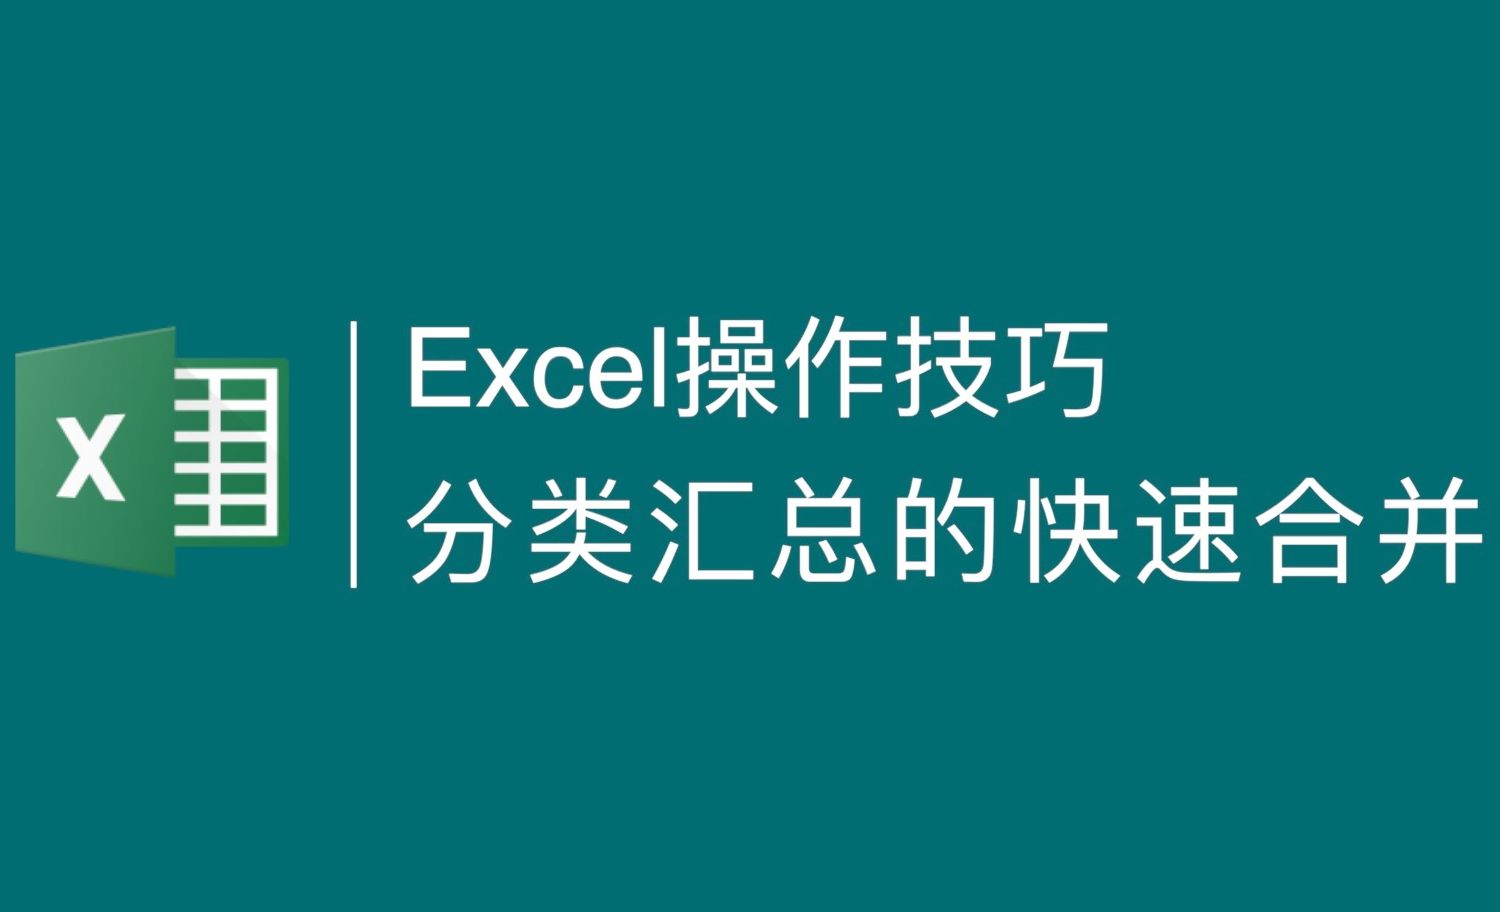 Excel操作技巧-快速合并相同内容单元格